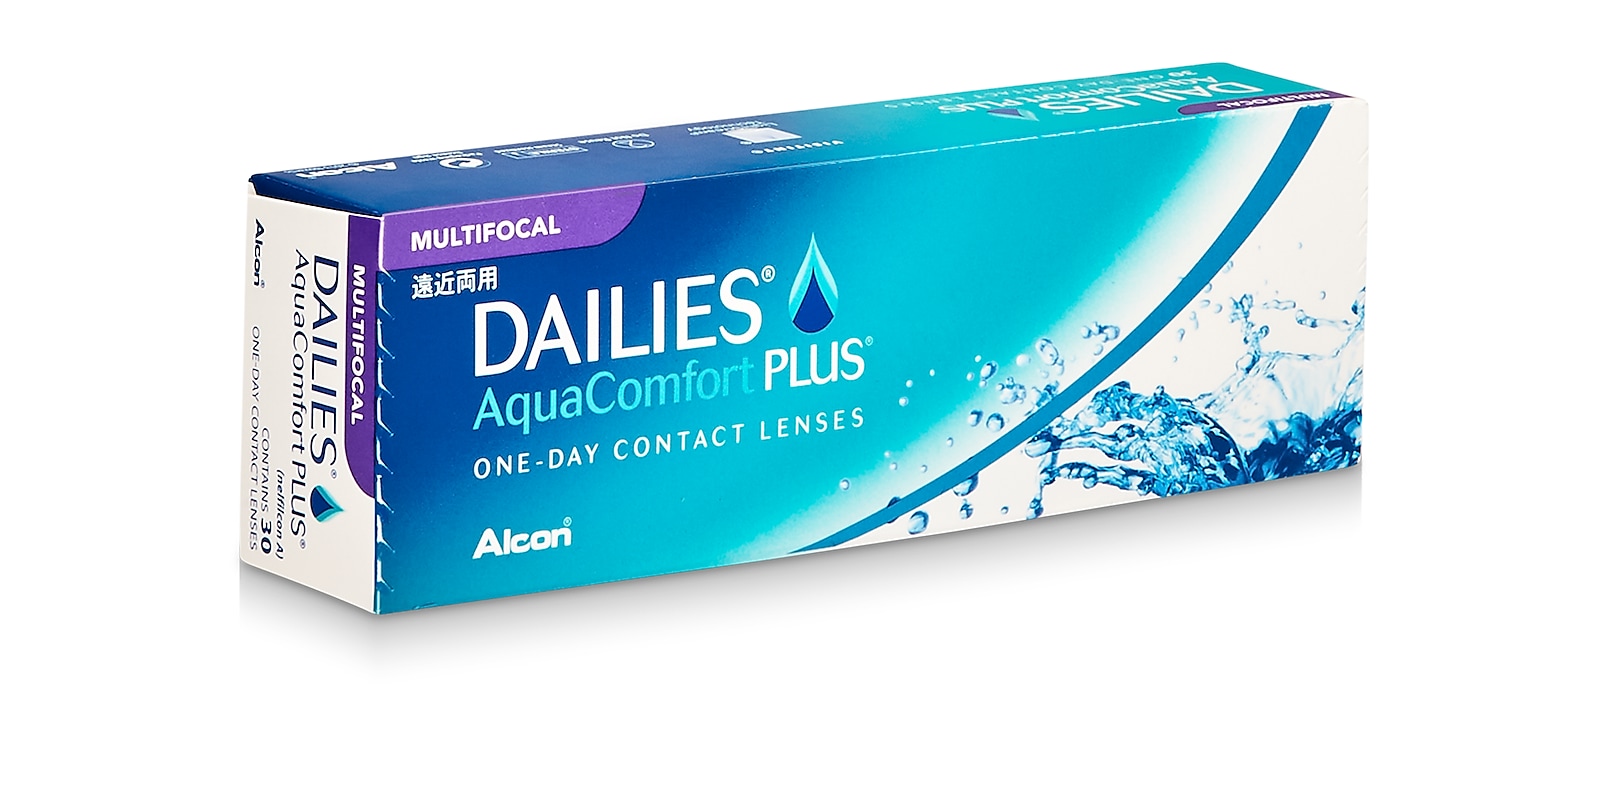 Dailies® AquaComfort Plus® Multifocal, 30 pack contact lenses